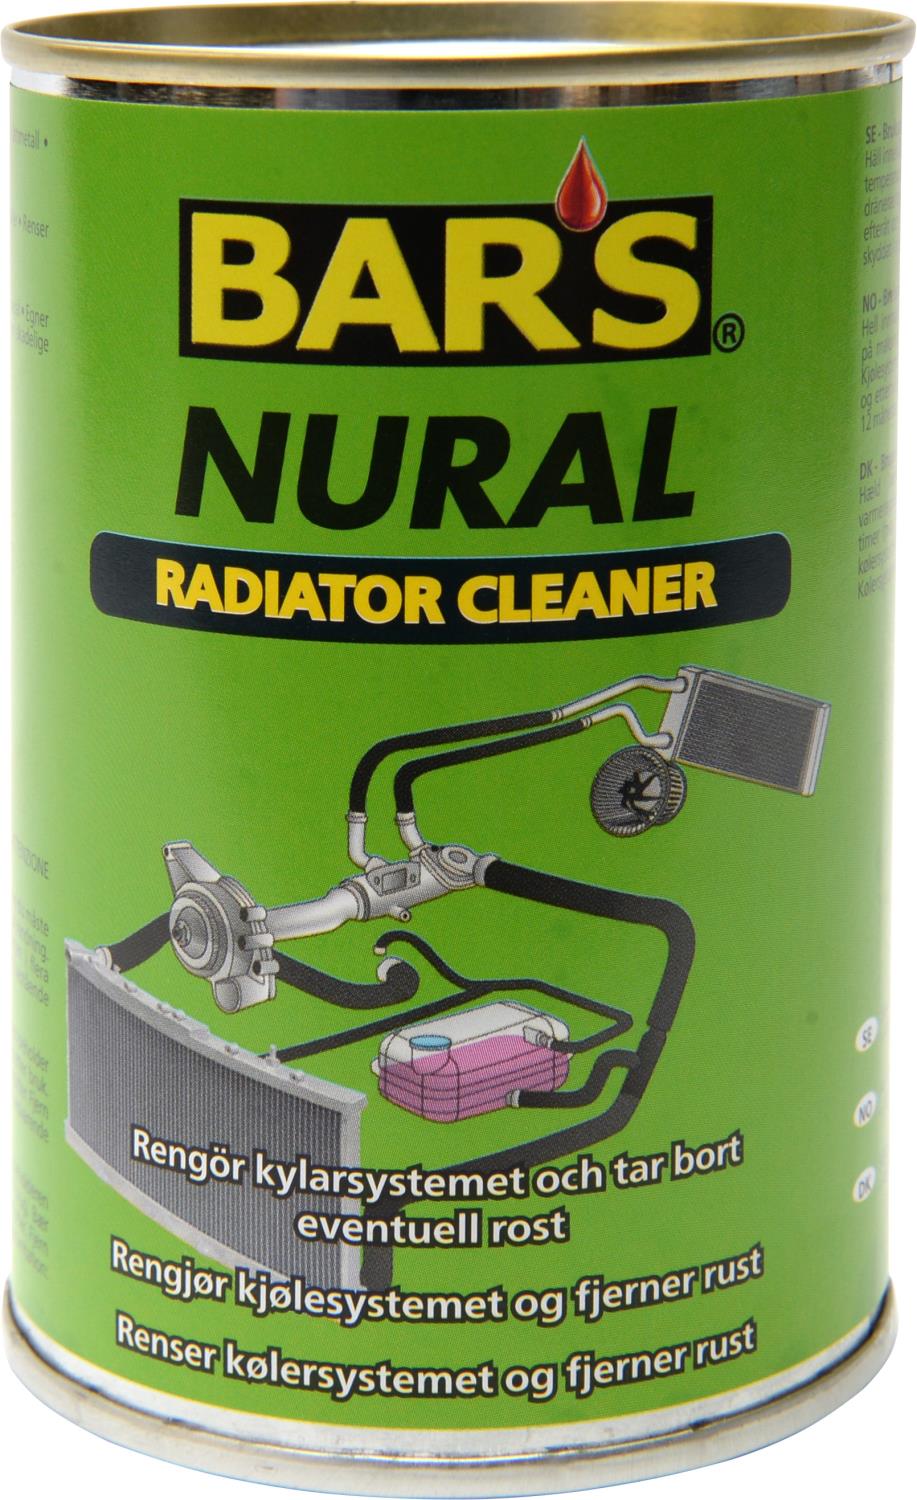 Bars Nural Radiator Cleaner 150g